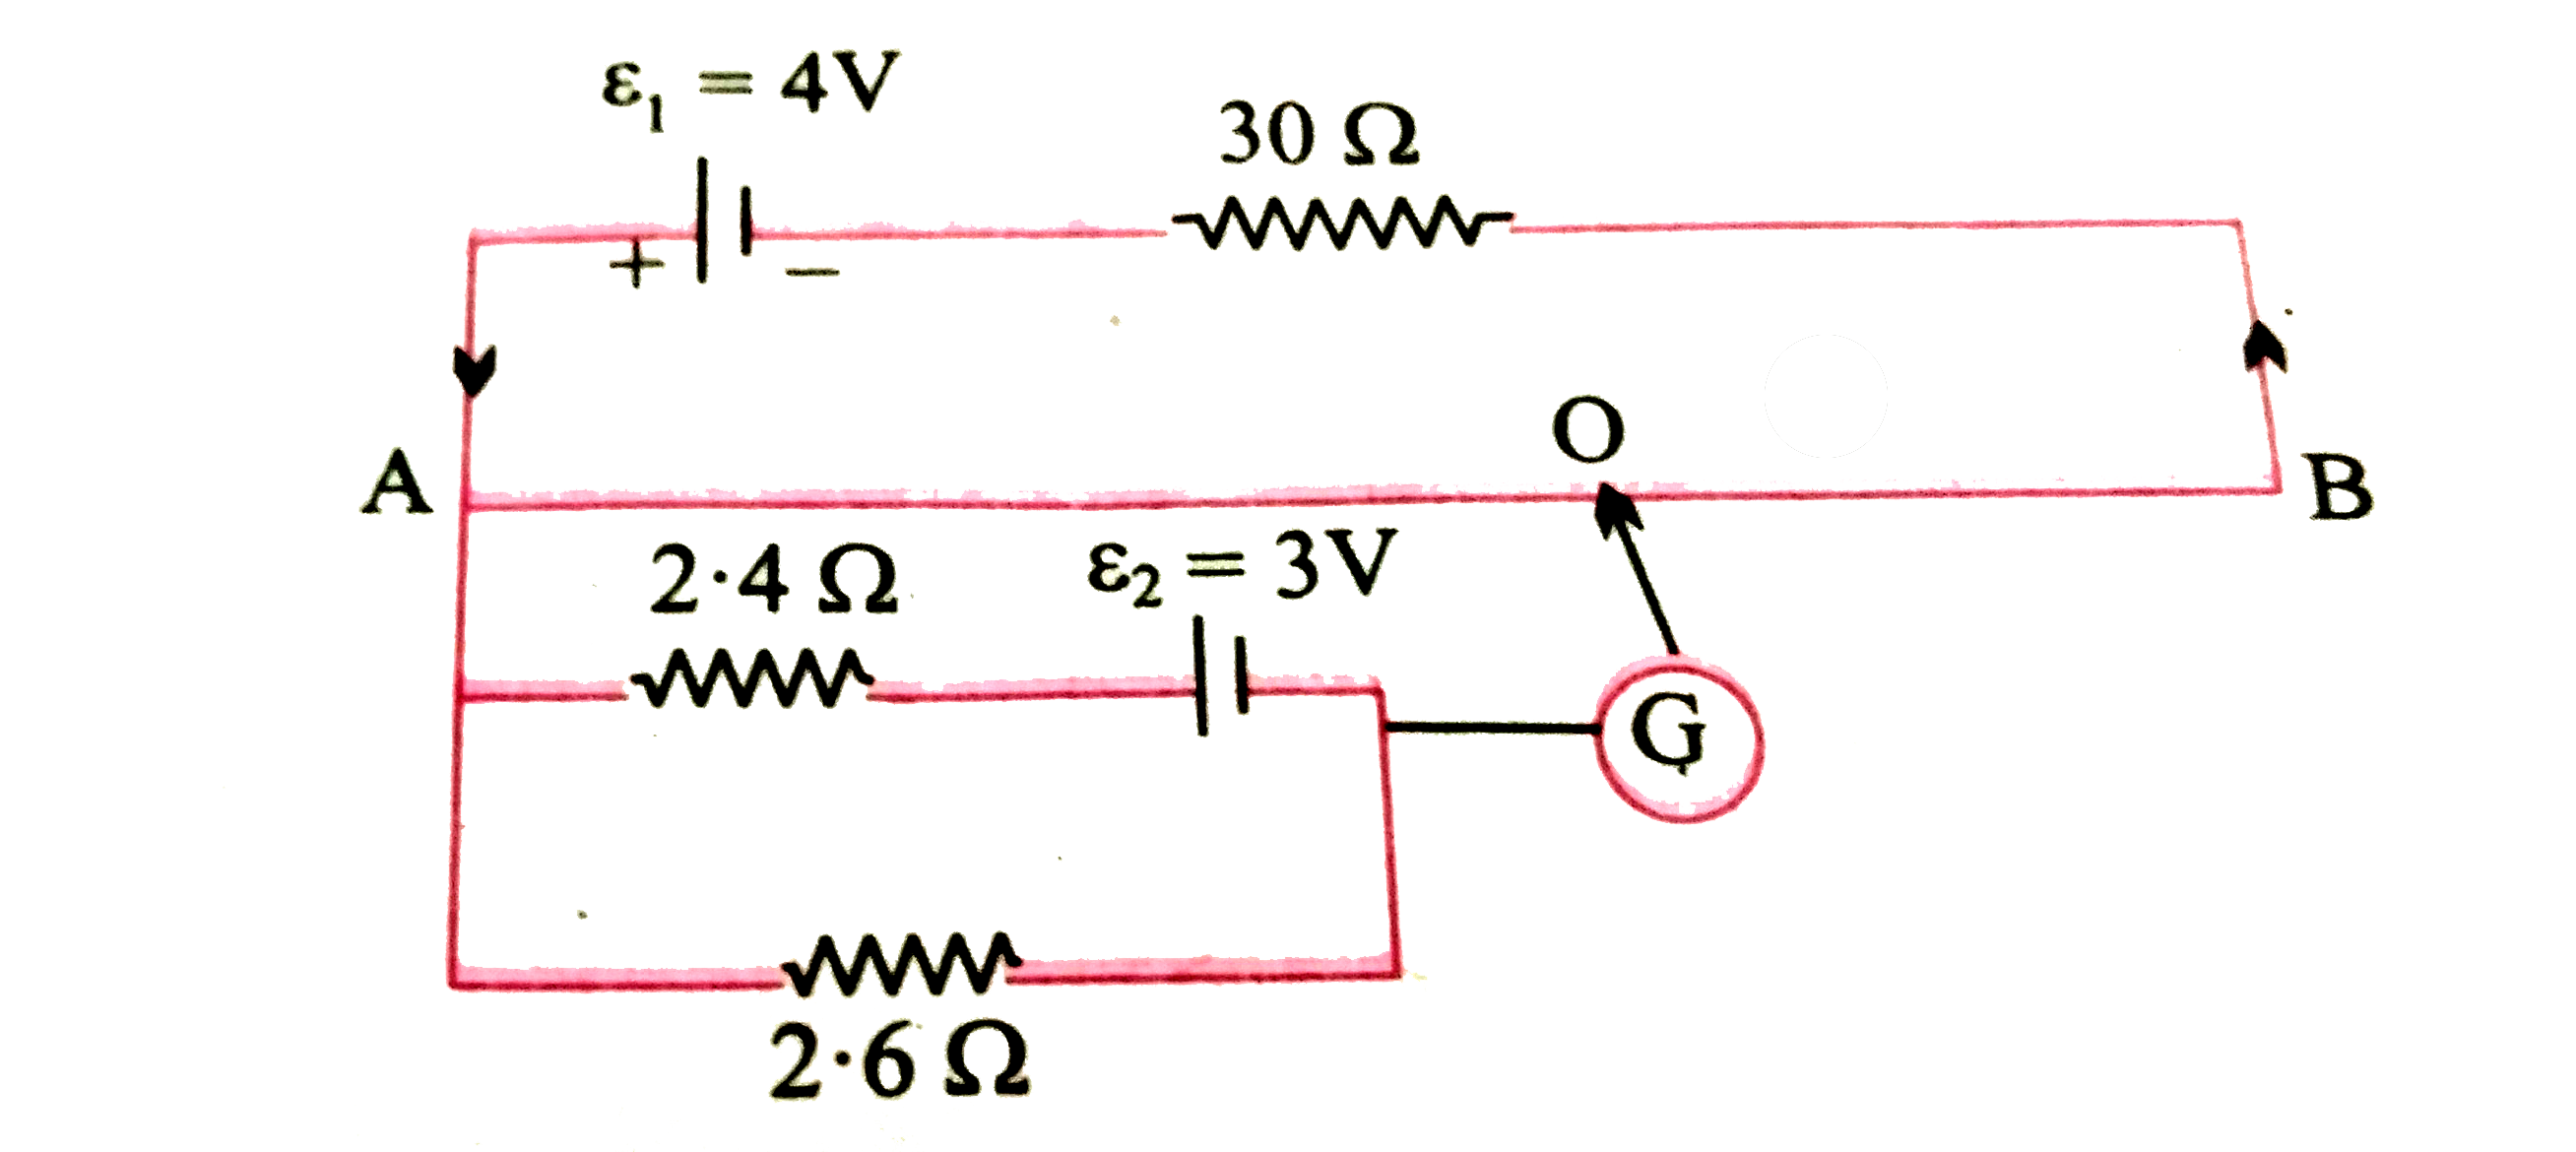 AB एकसमान  परिच्छेद  वाला  2 मीटर  लम्बा  तार है  जिसका  प्रतिरोध 20  ओम है  । अन्य आकड़े  नीचे दिए  गए रेखाचित्र  में अंकित है -       गणना  कीजिए - विभवमापी के तार की  विभव - प्रवणता